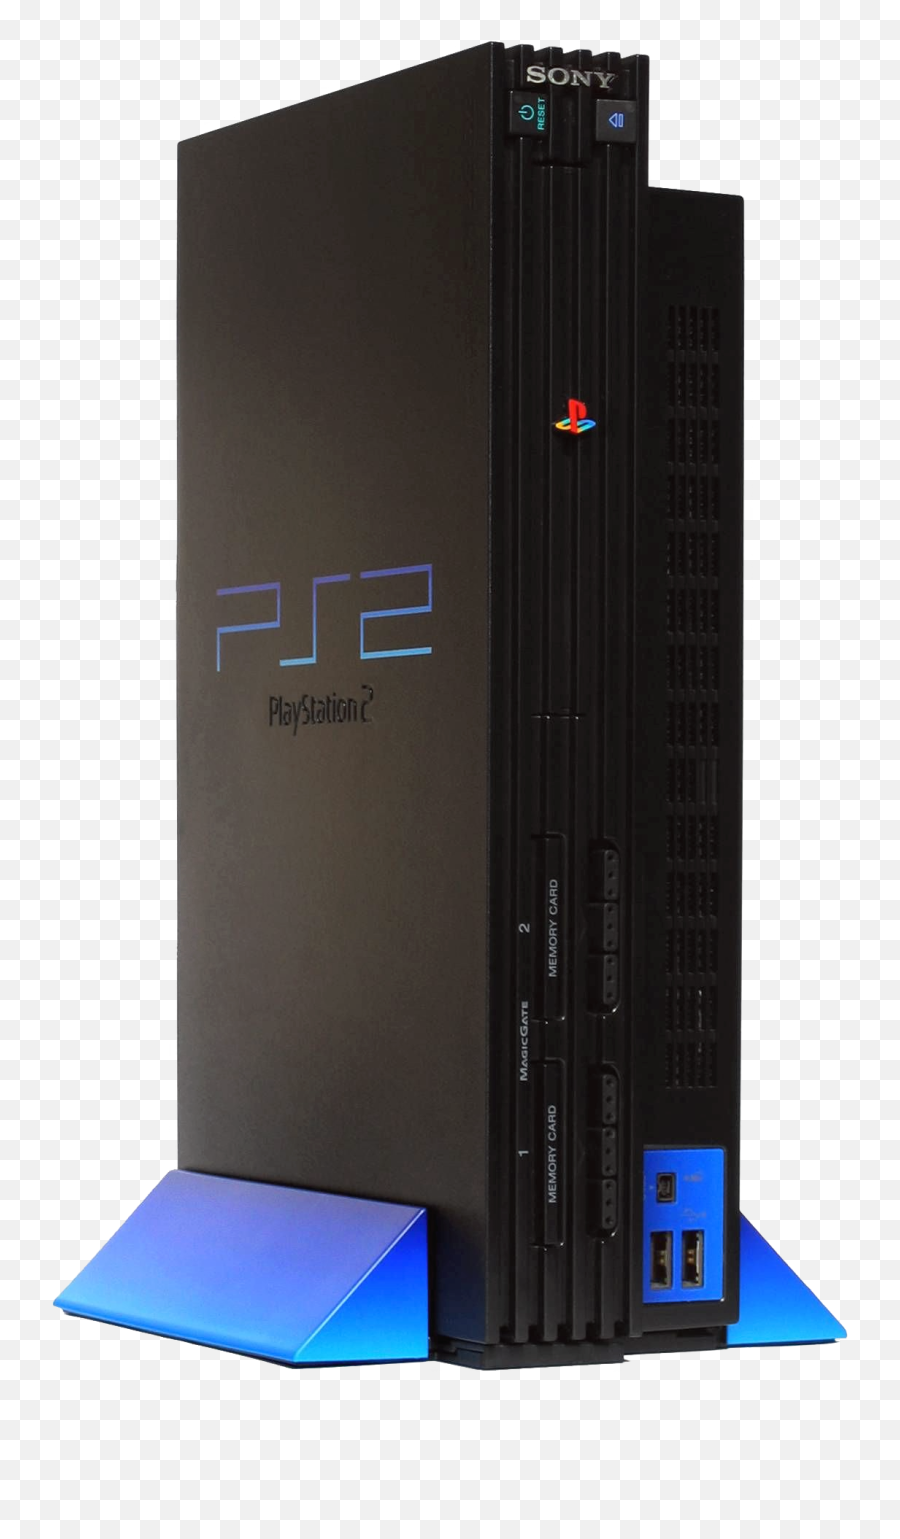 Ps 2 Png 4 Image - Playstation 2 Png,Playstation 2 Png